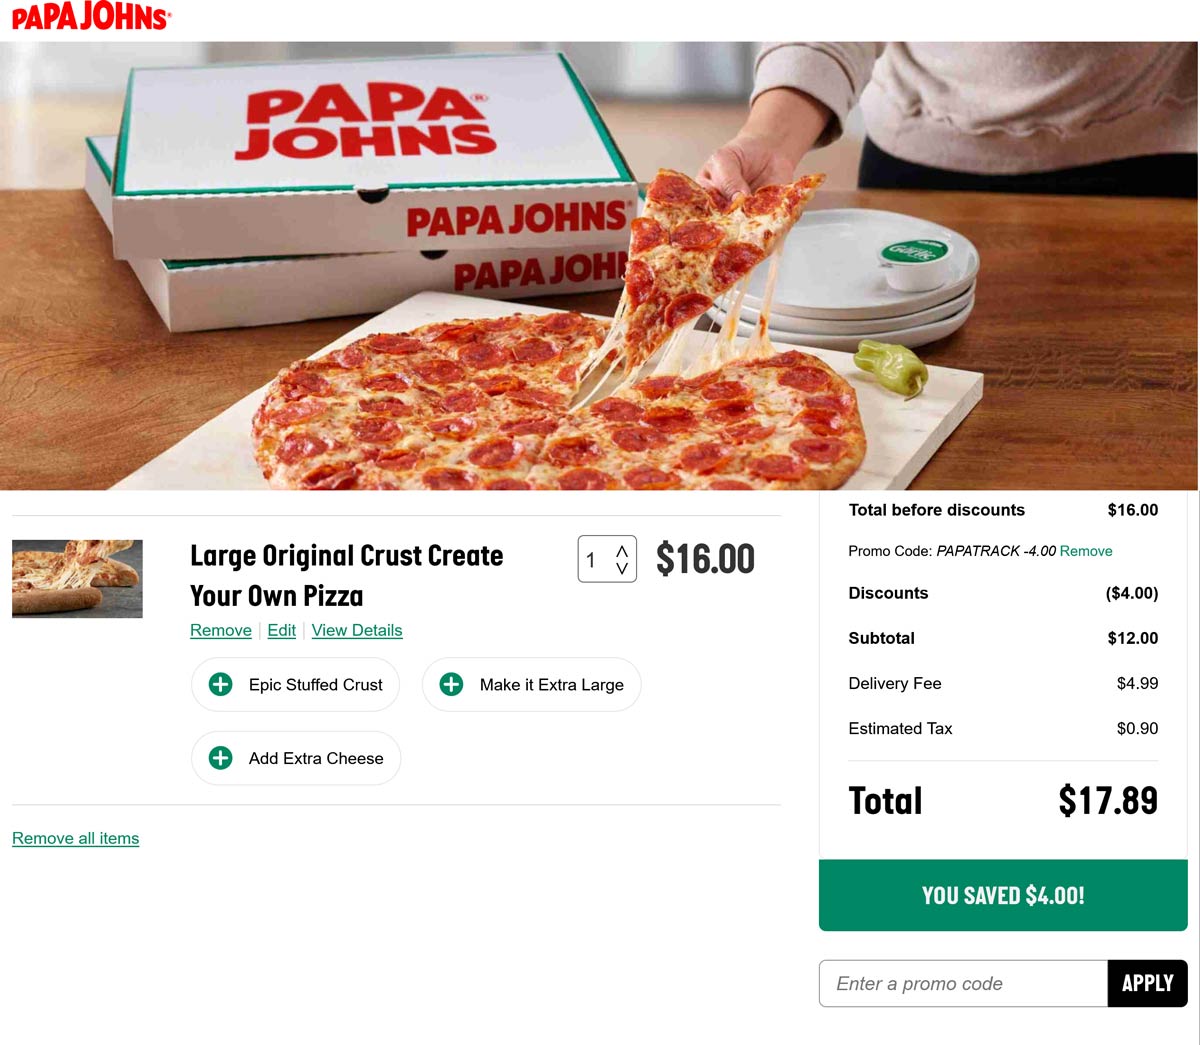 Papa Johns restaurants Coupon  25% off at Papa Johns pizza via promo code PAPATRACK #papajohns 